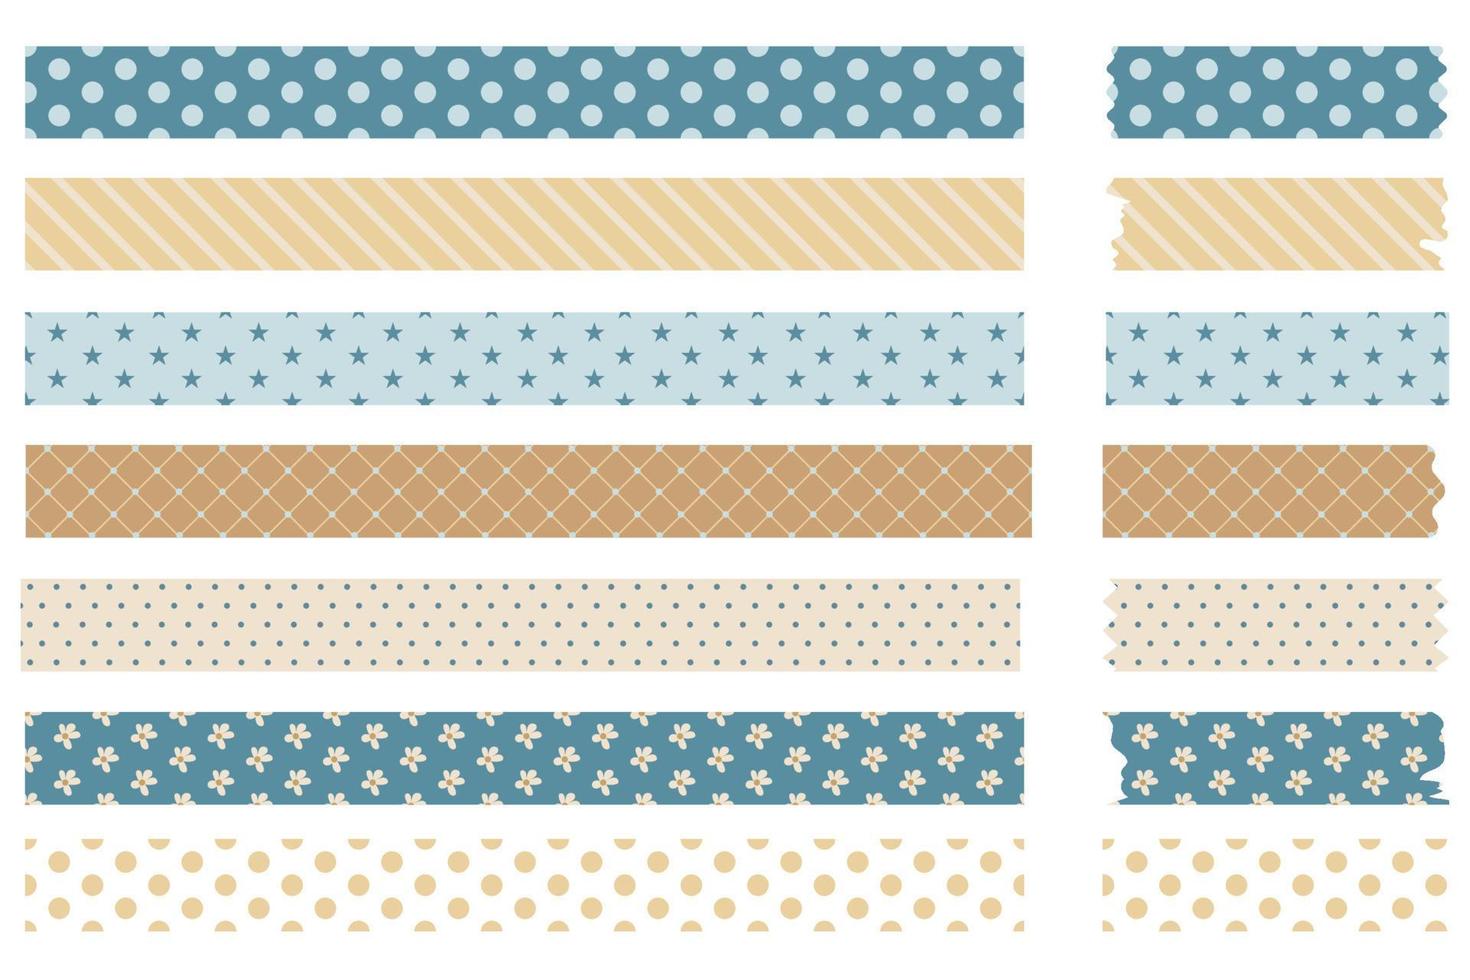 bandes de washi tape vintage colorées avec des motifs géométriques et floraux. aux bords irréguliers. illustration vectorielle isolée sur fond blanc. lignes cercles fleurs pois autocollants pour planificateur vecteur